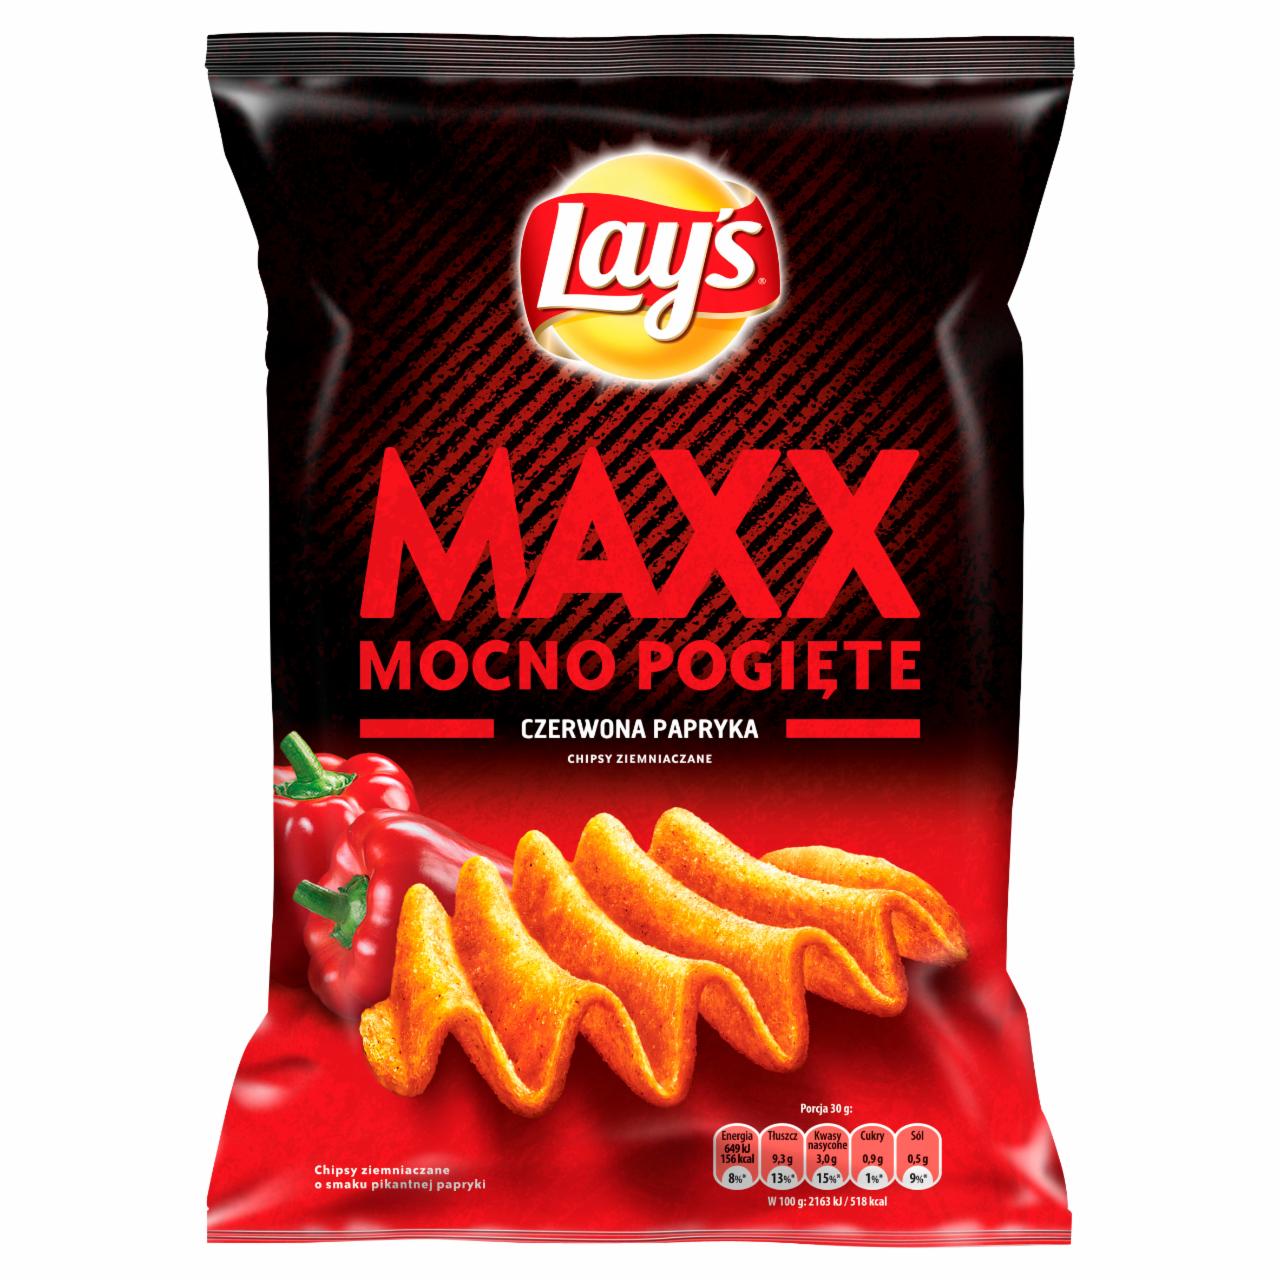 Zdjęcia - Lay's Maxx Mocno Pogięte o smaku Czerwona papryka Chipsy ziemniaczane 140 g